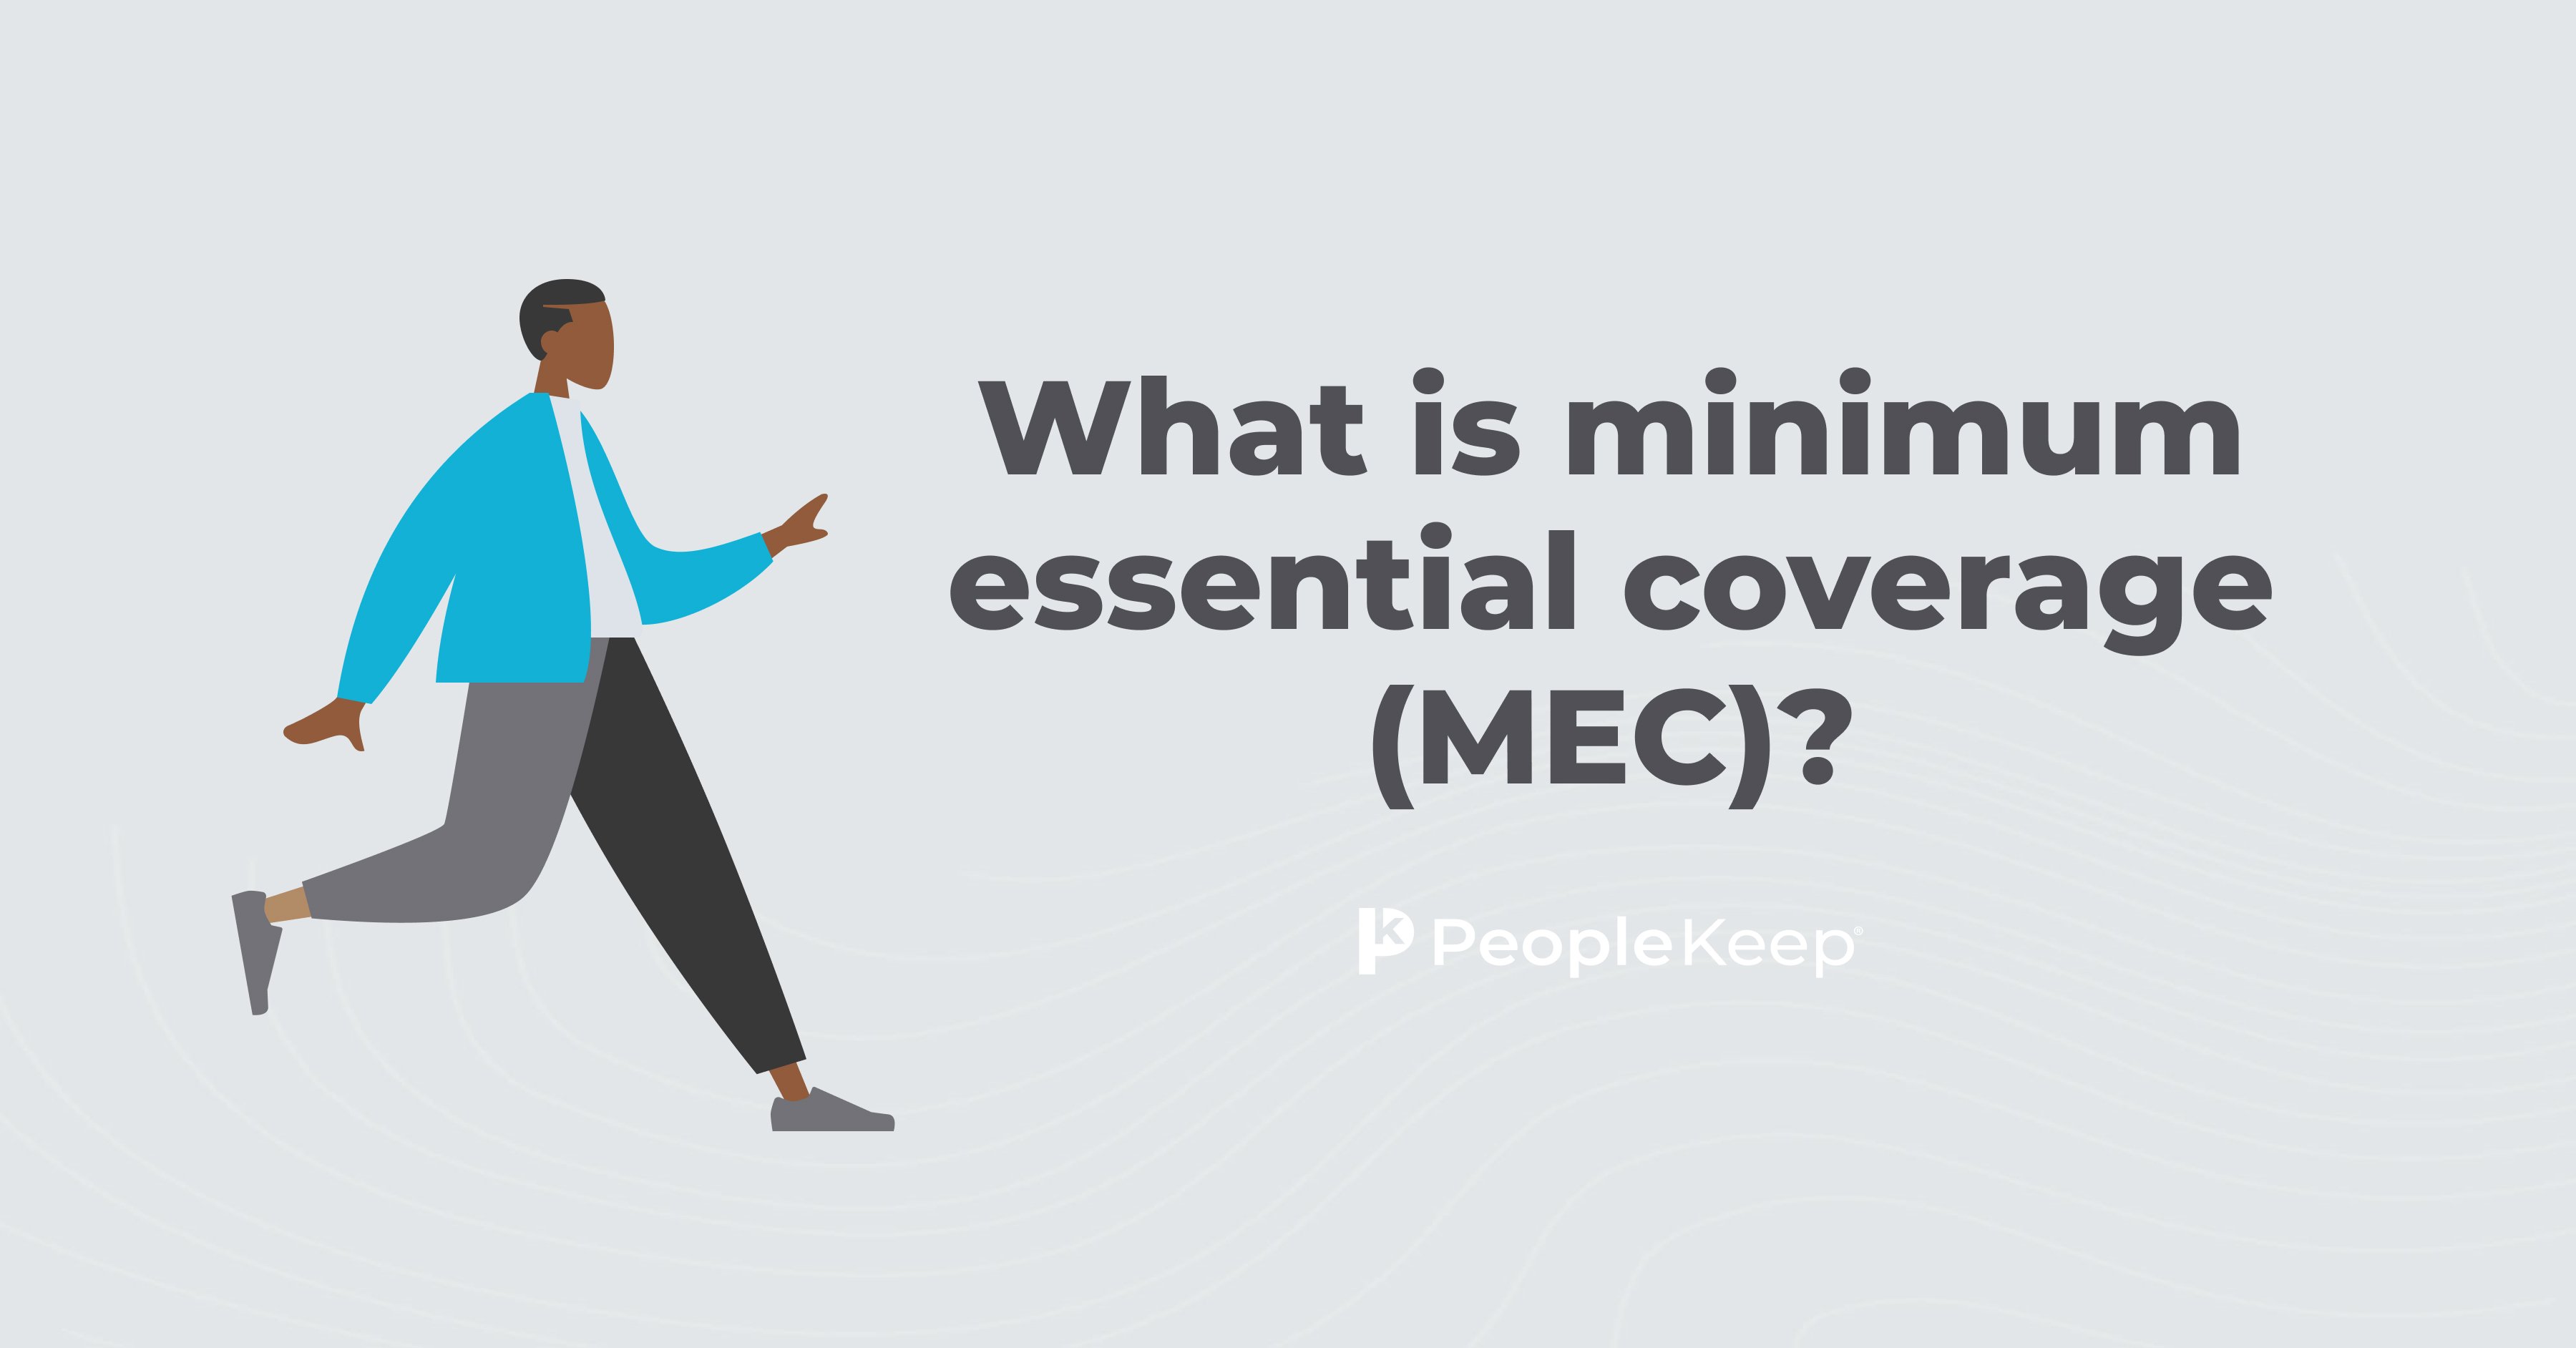 What is minimum essential coverage (MEC)?